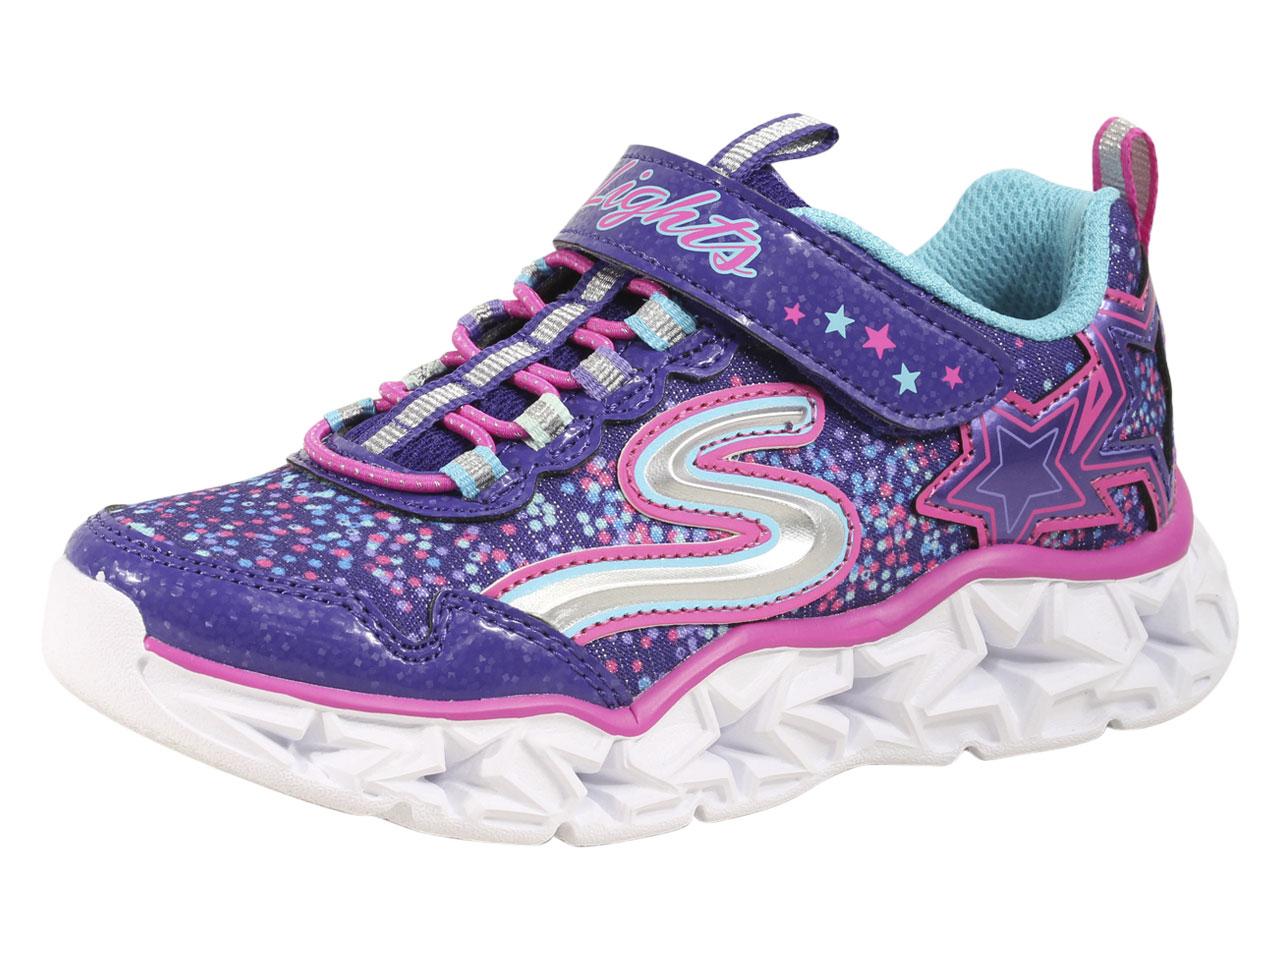 Skechers Little Girl's S Lights Galaxy Lights Sneakers Shoes - Purple/Multi - 2 M US Little Kid